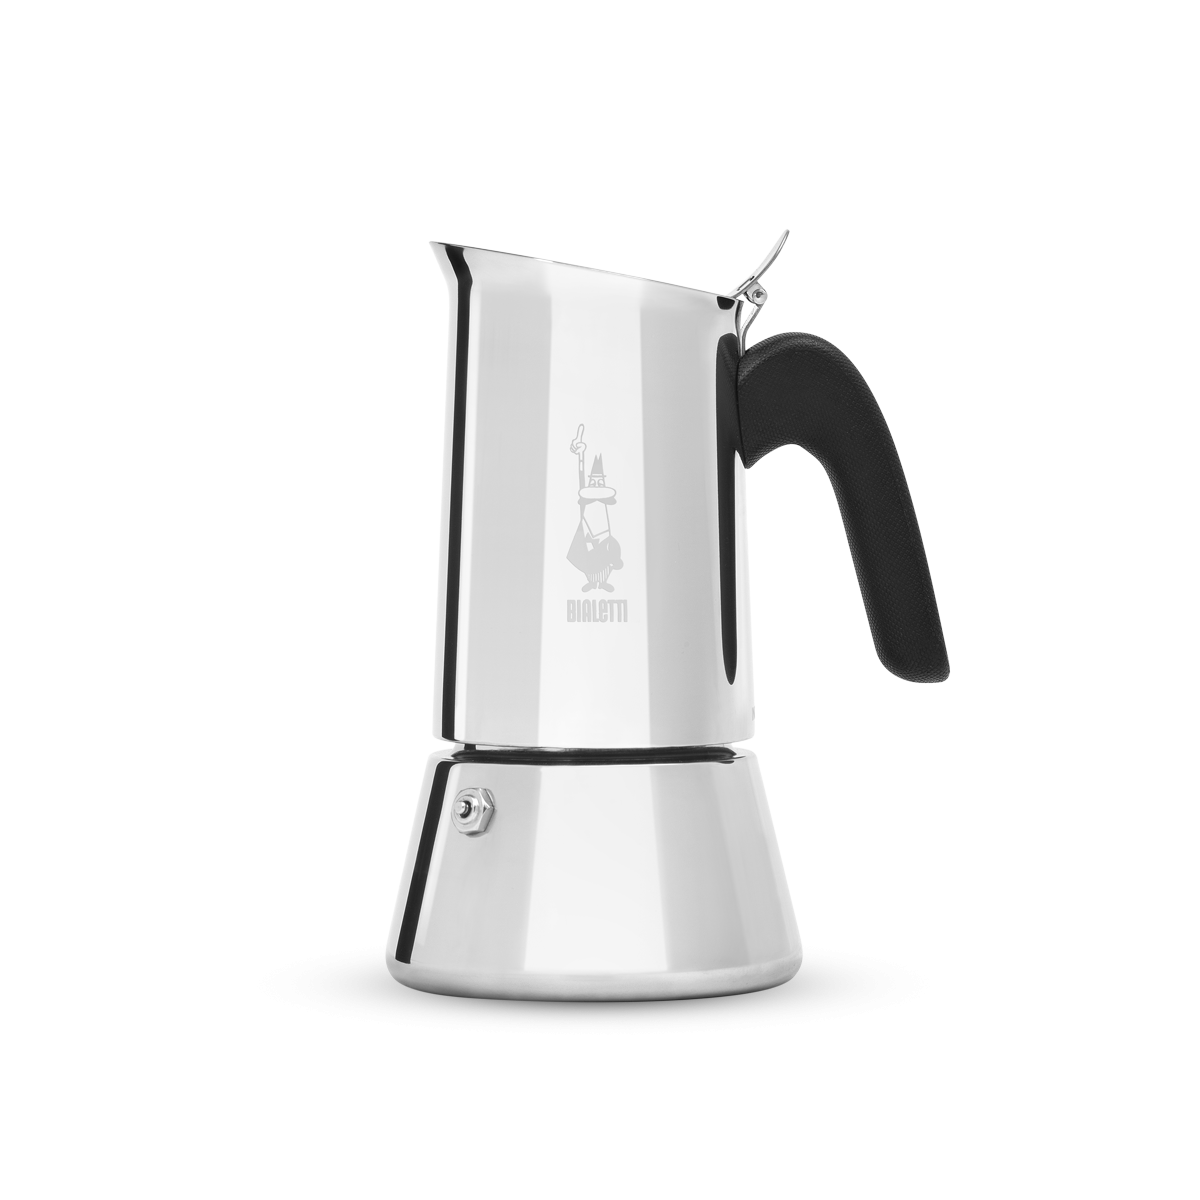 Bialetti Venus Stovetop Espresso Maker - 6 Cup